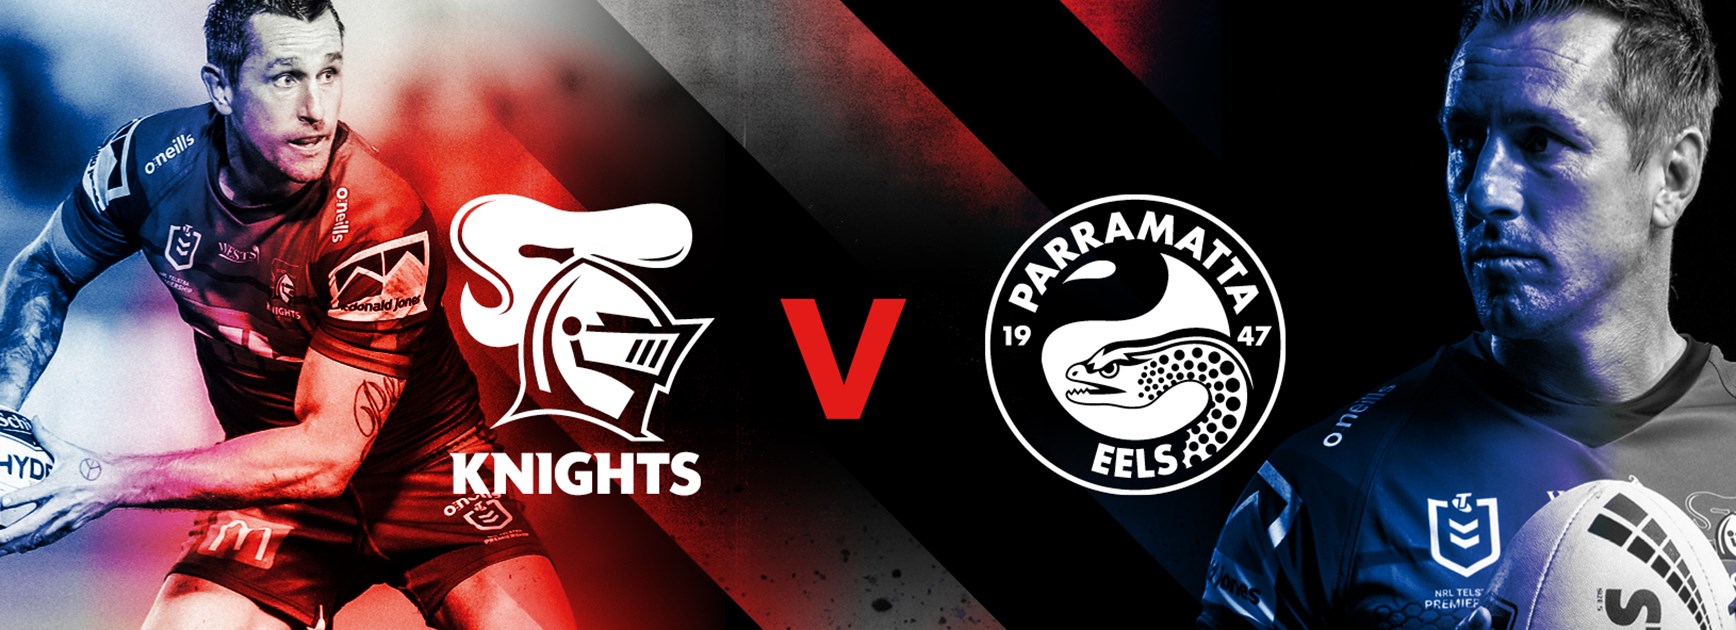 Knights v Eels Round 9 NRL team list